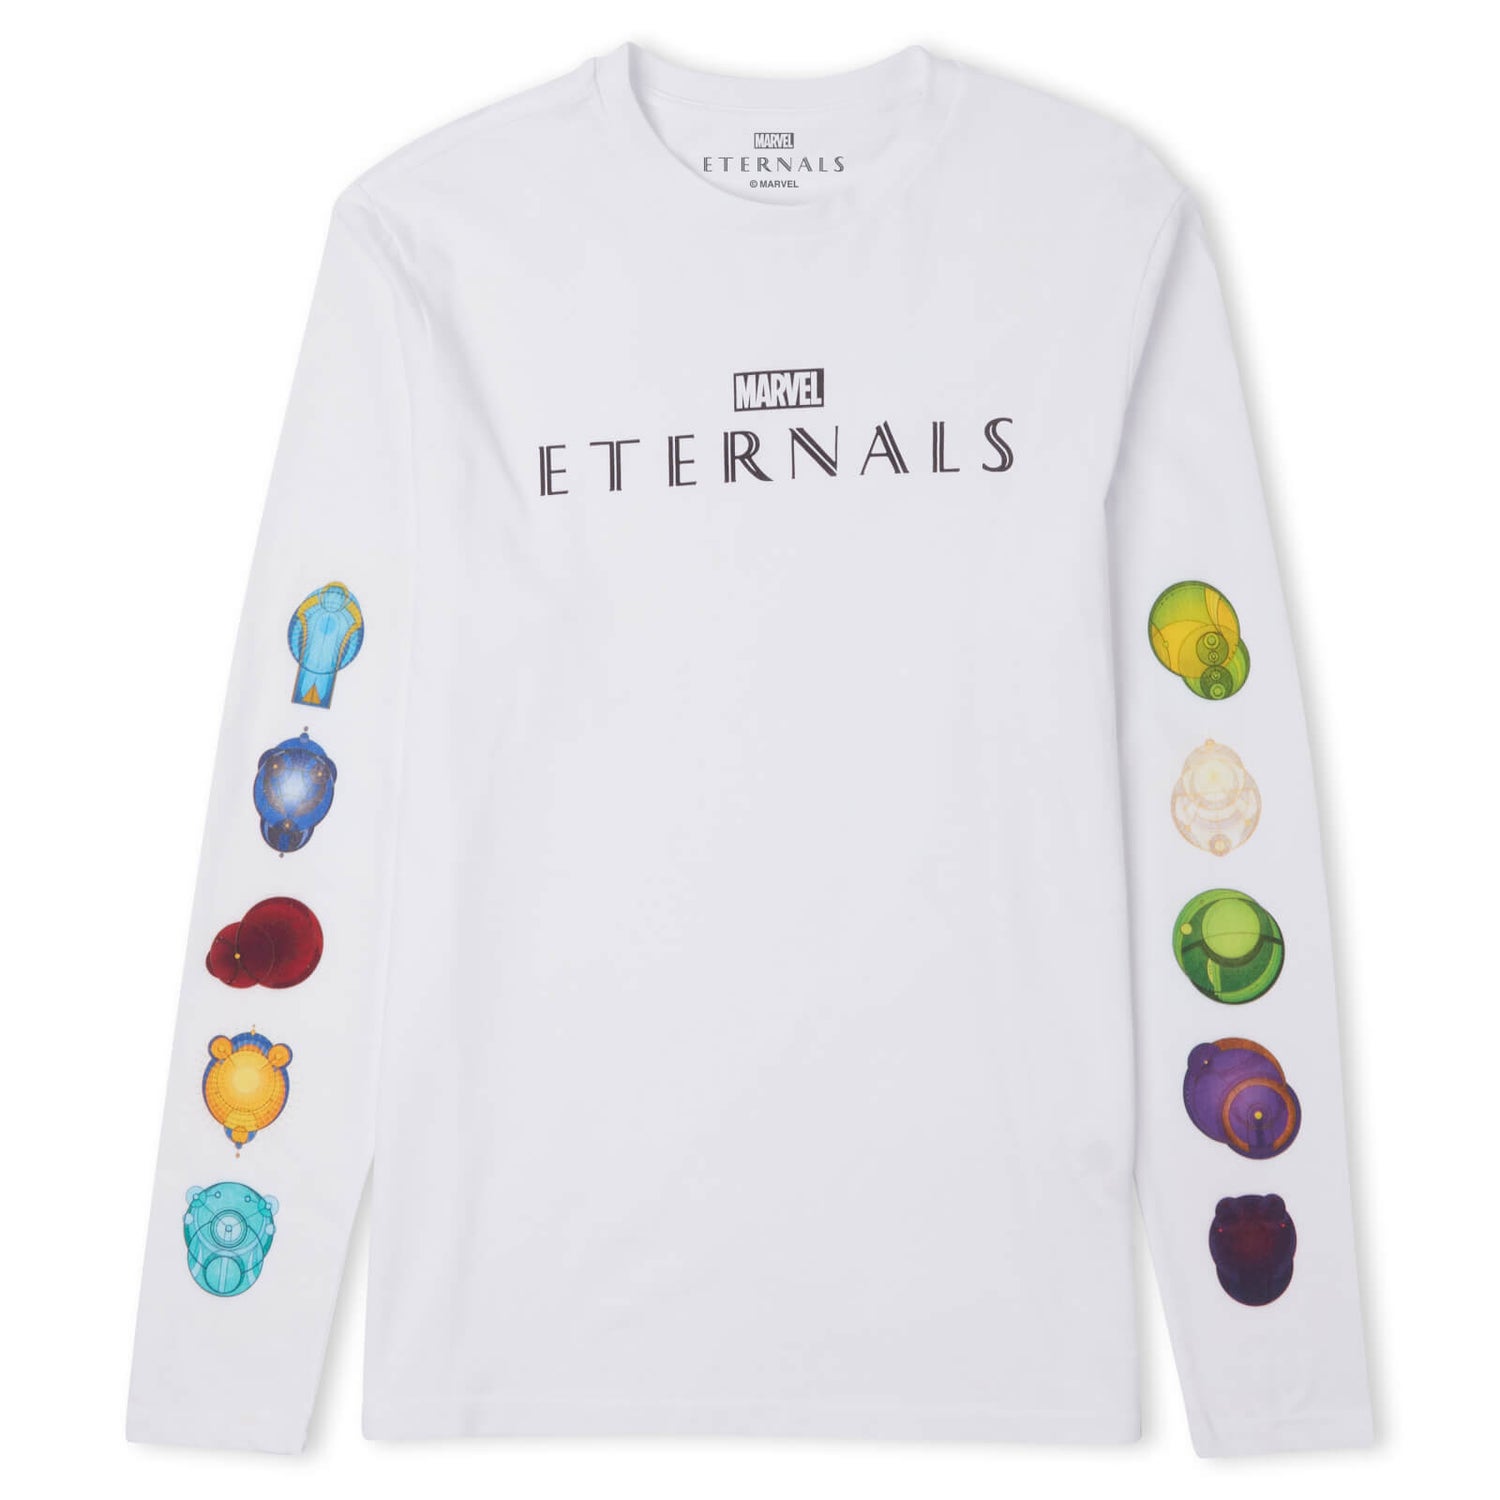 Marvel Eternals Unisex Long Sleeve T-Shirt - White